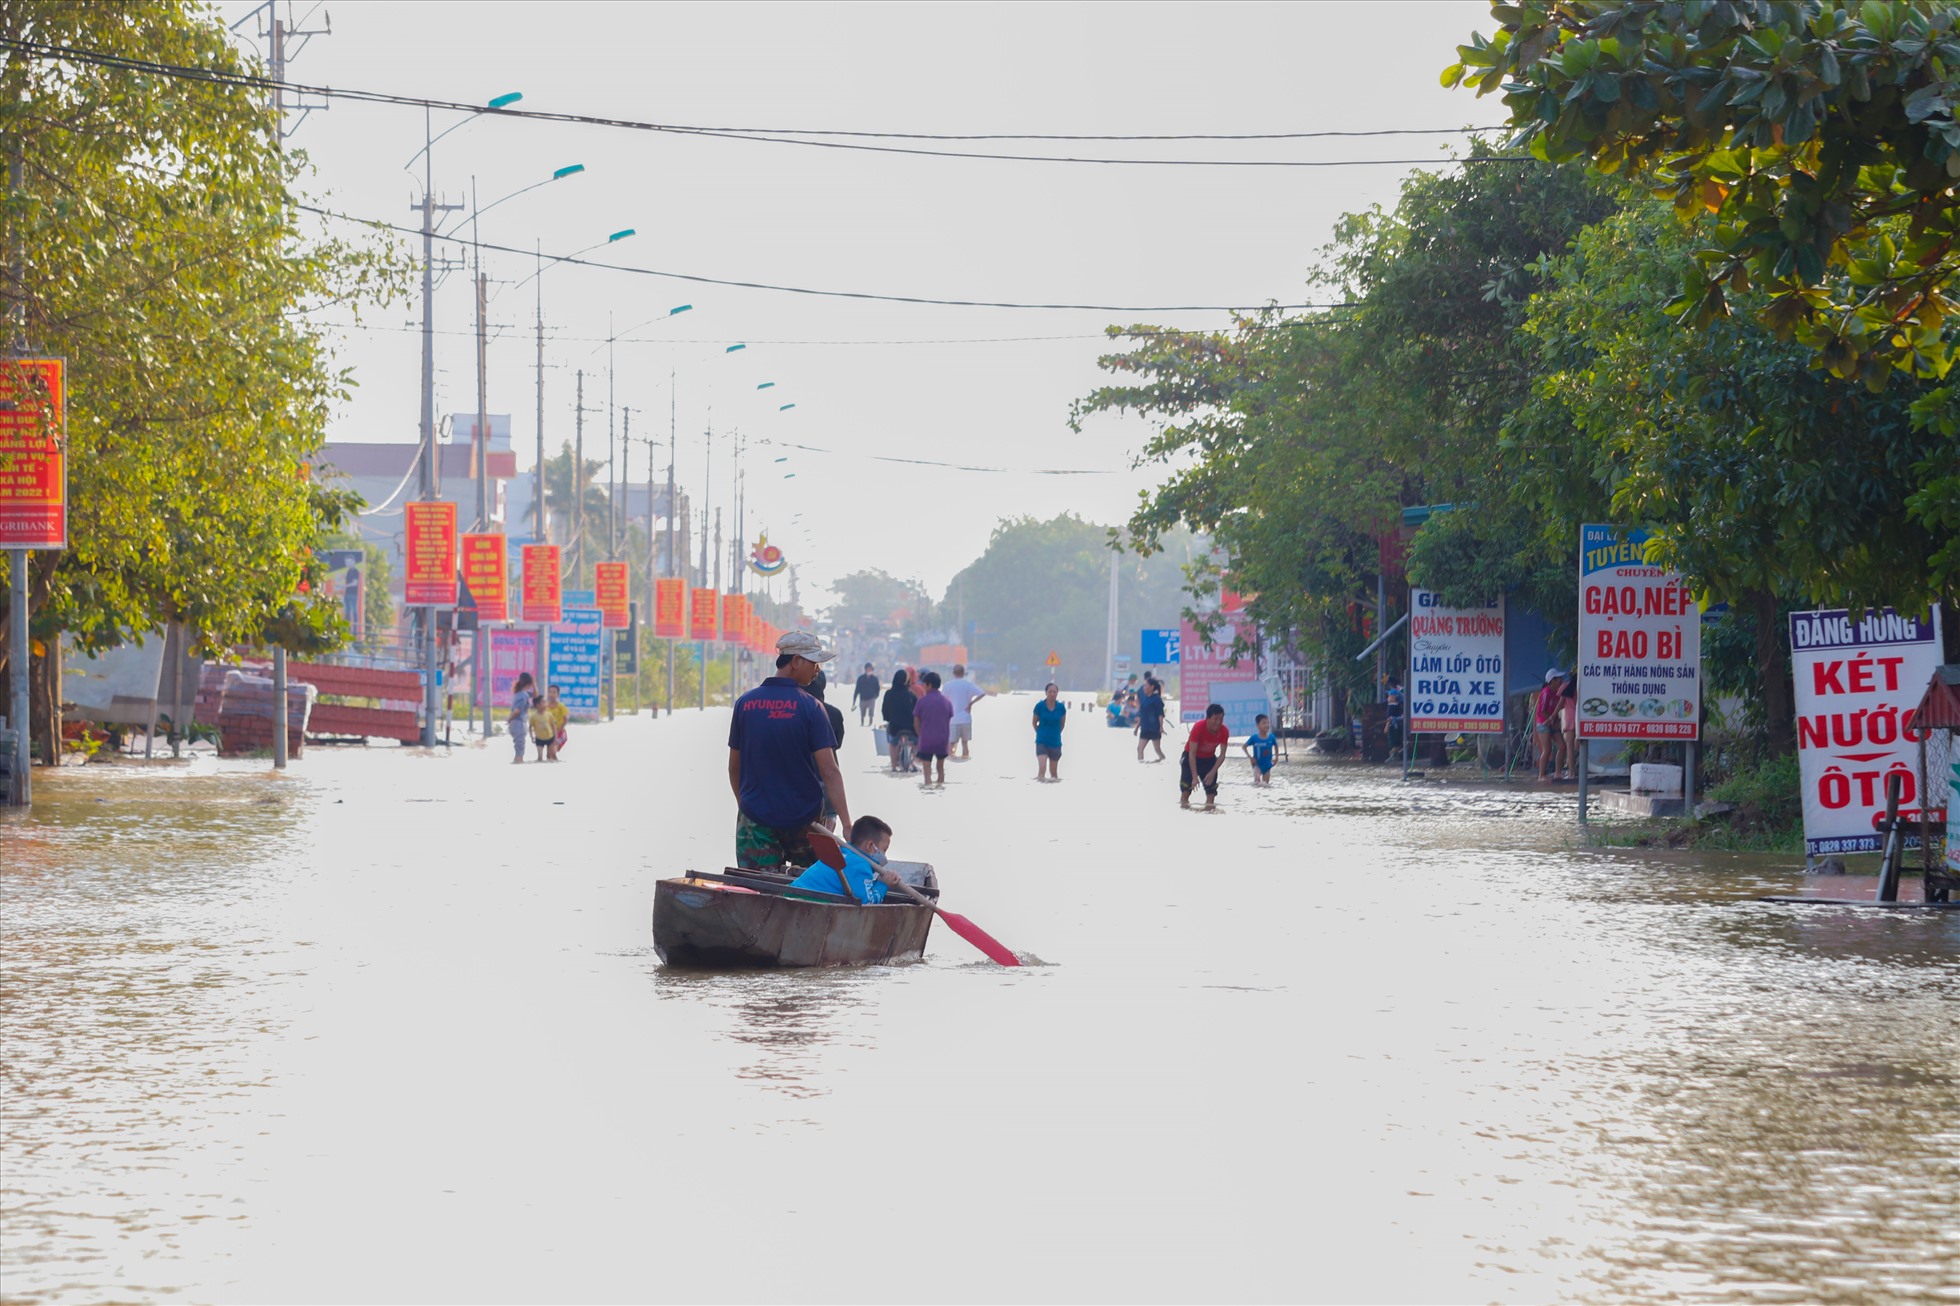 Tại huyện Lệ Thủy đã dừng mưa, trời hửng nắng và nước lũ cũng đã rút dần.